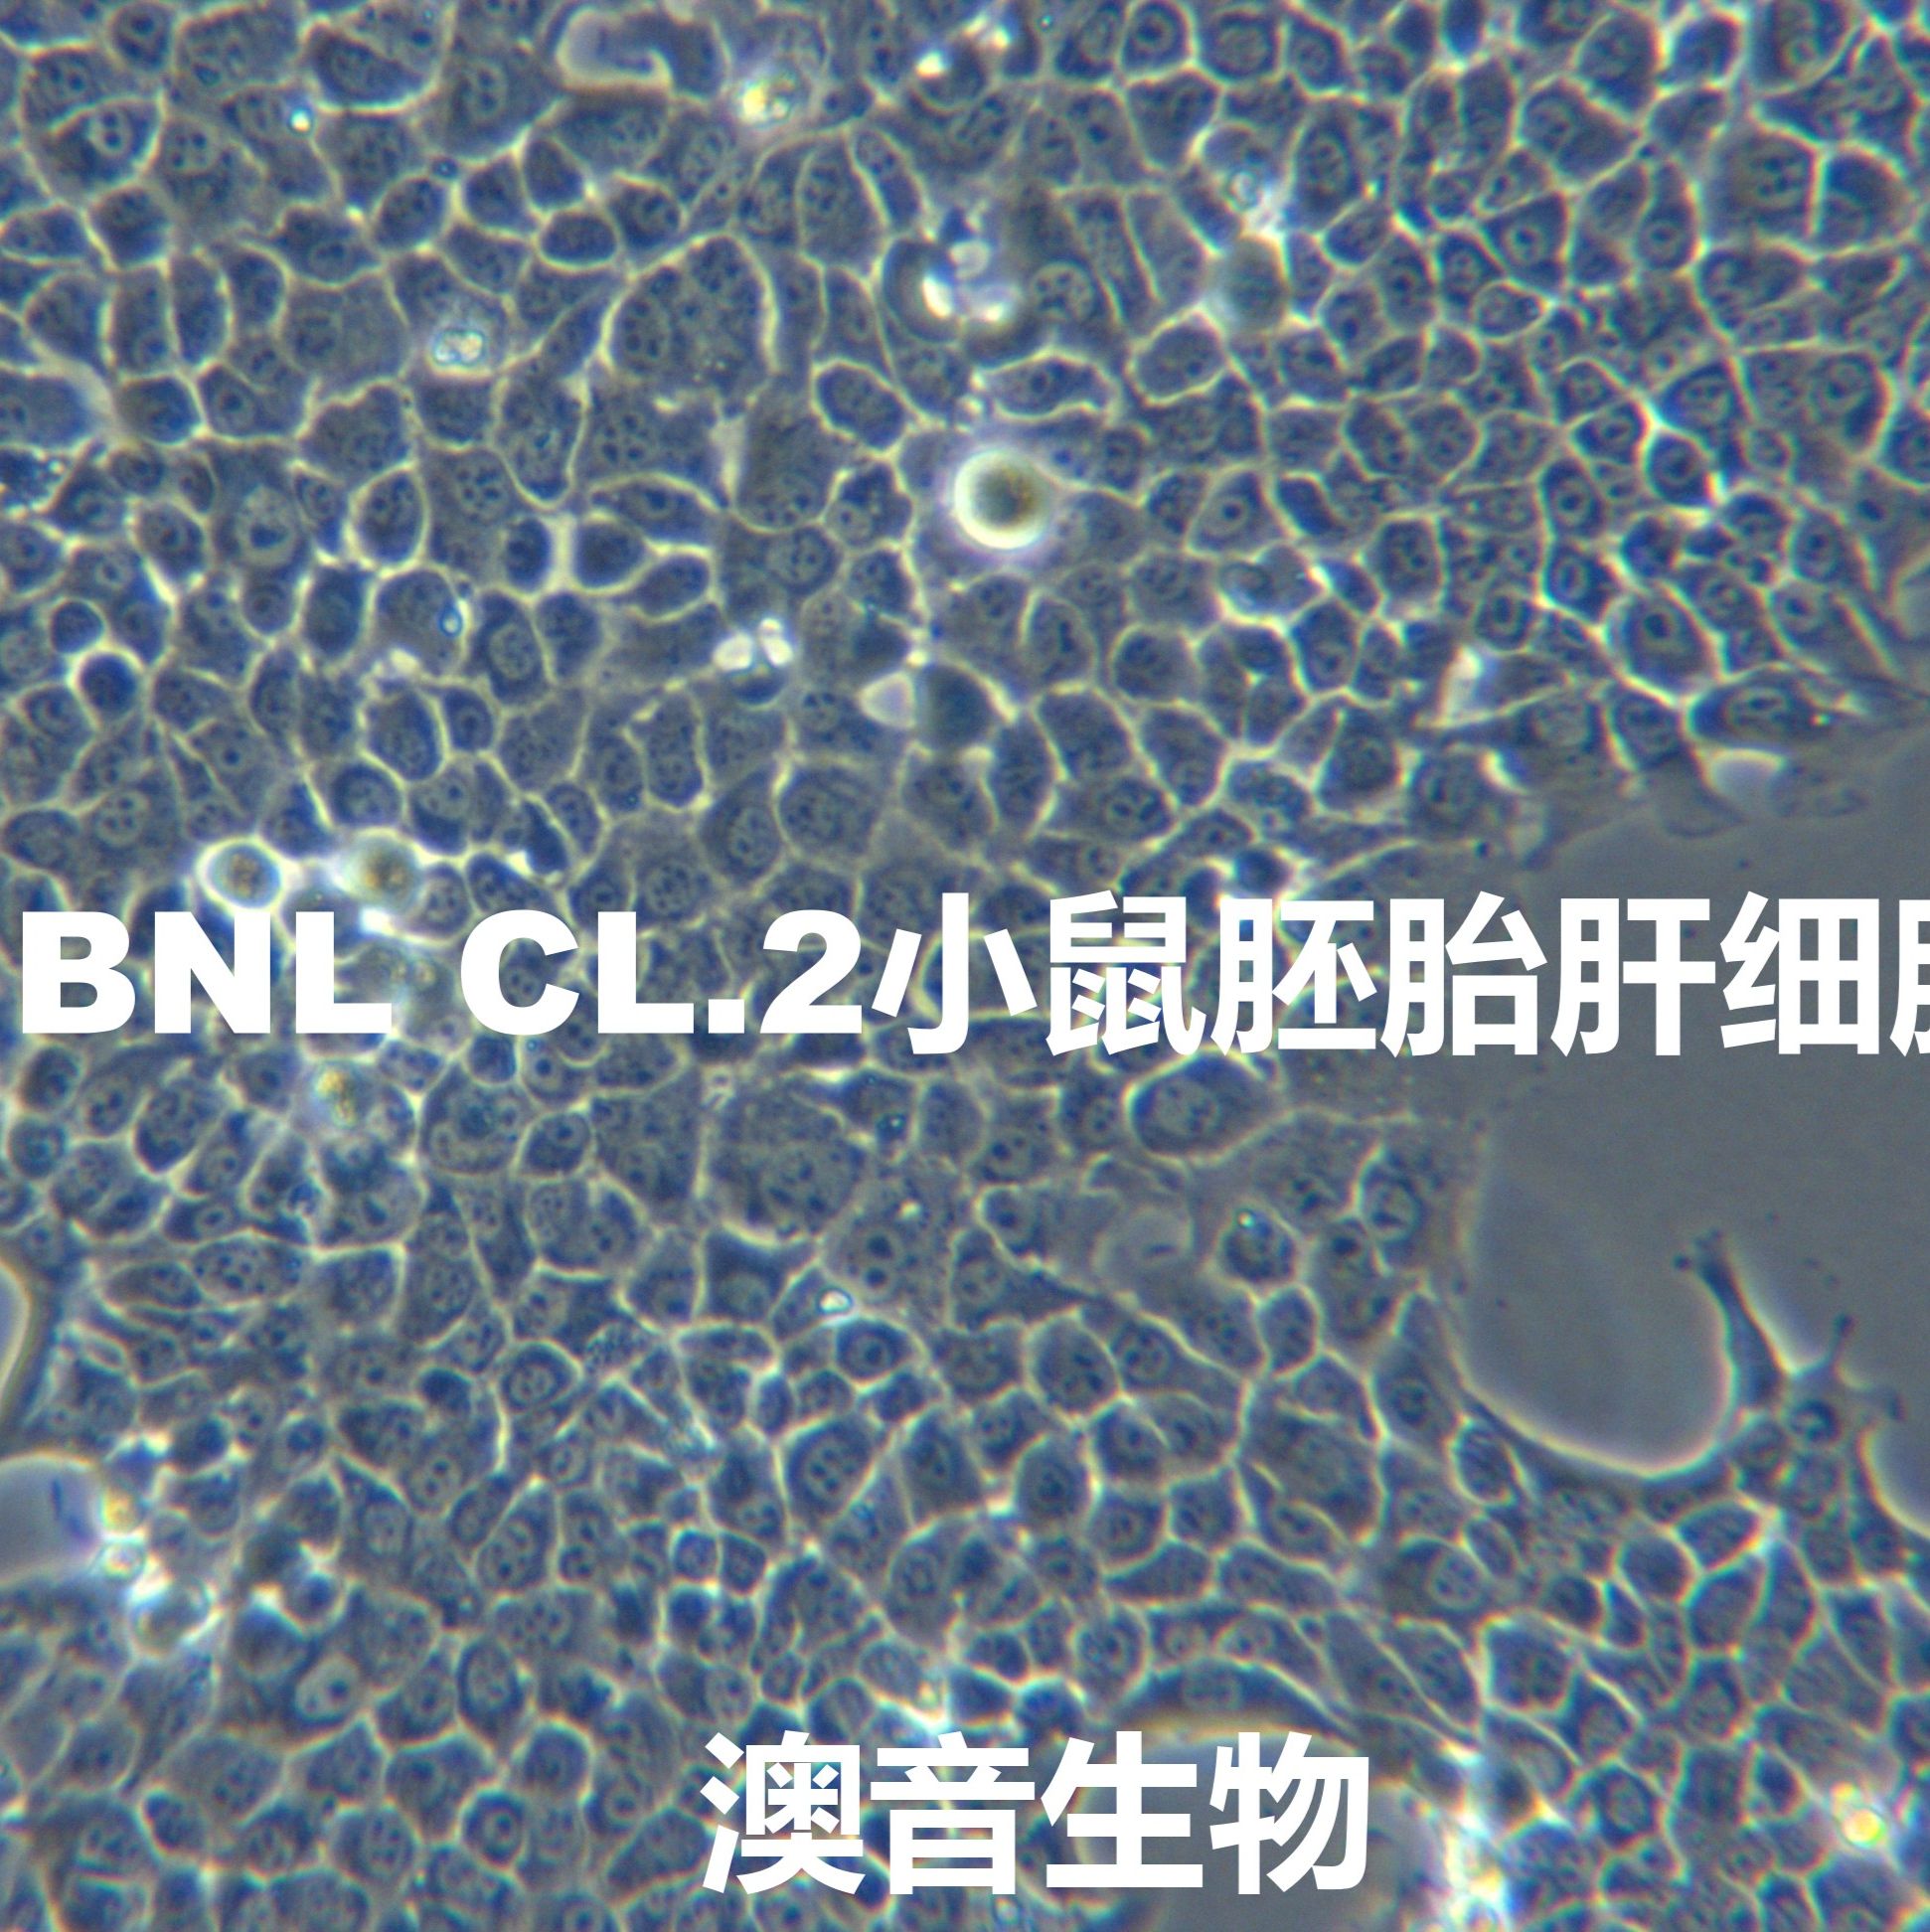 BNL CL.2【BNL-CL.2; BNL CL2; BNL.CL2; BN-CL2; BNCL-2; BNCL2】小鼠胚胎肝细胞